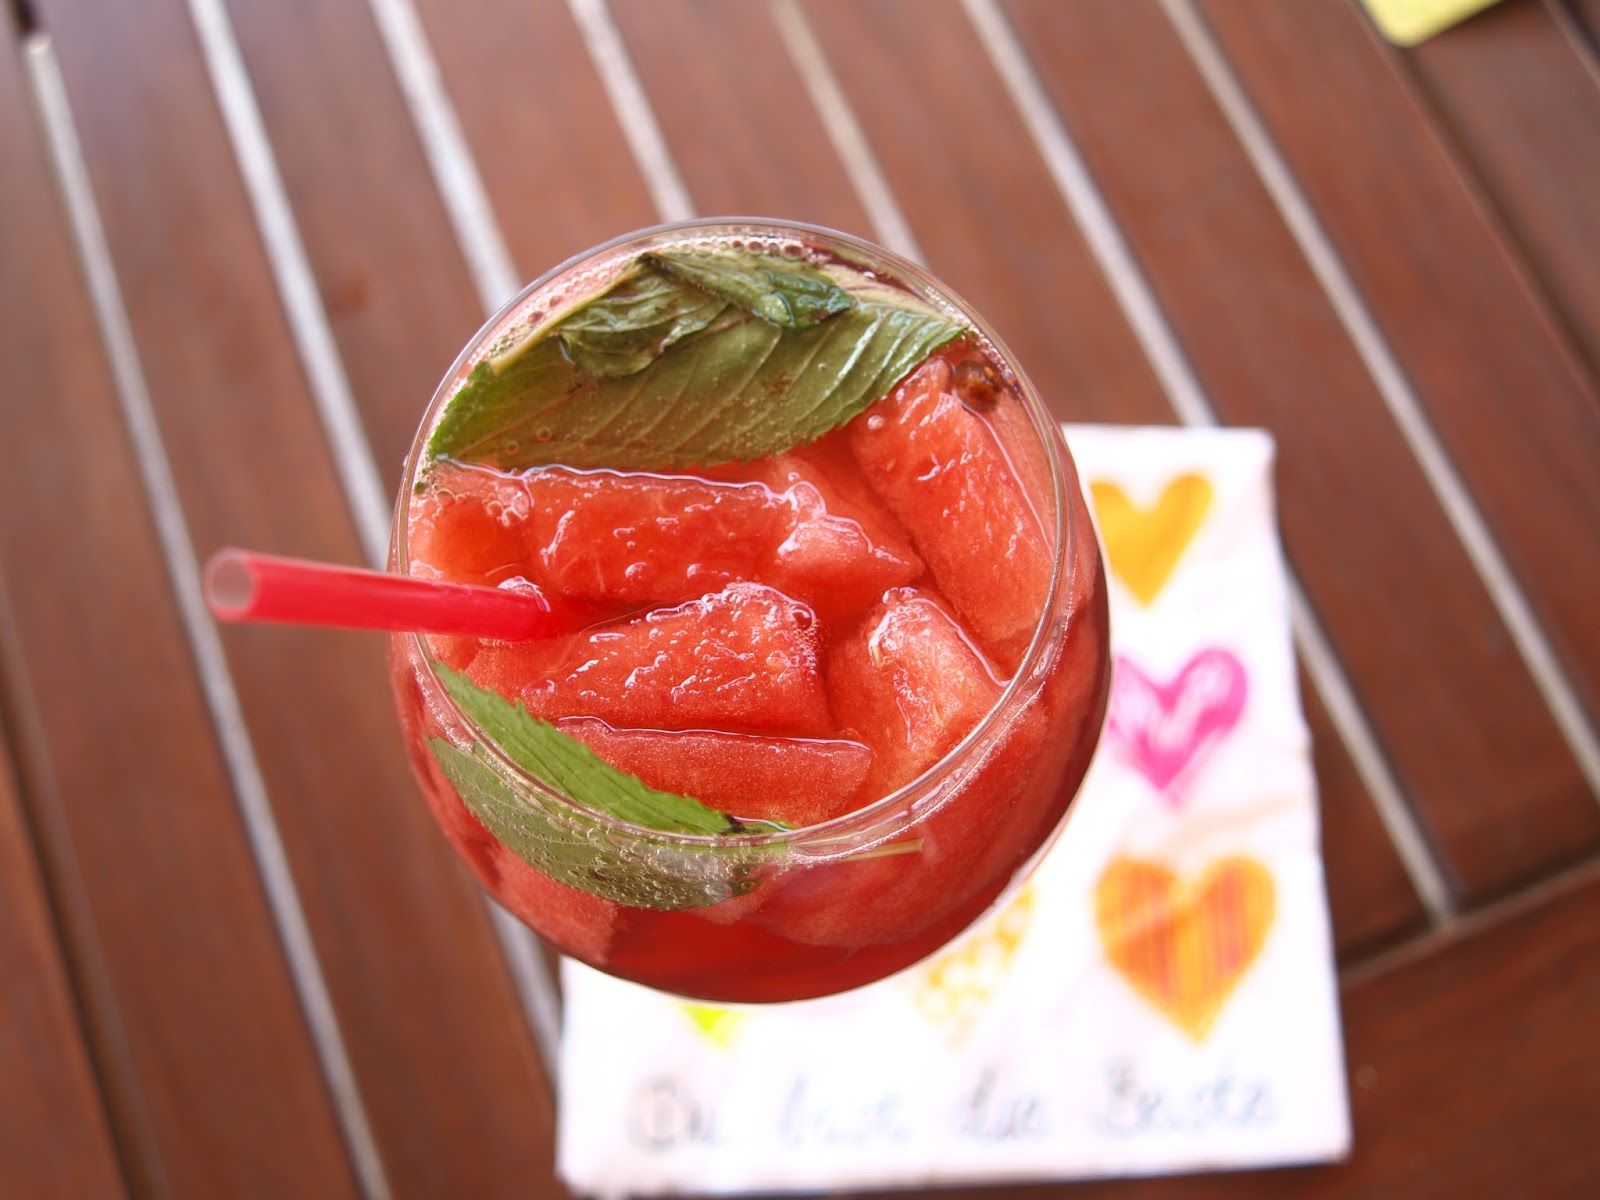 Himbeer Wassermelonen Blitzeis — Rezepte Suchen